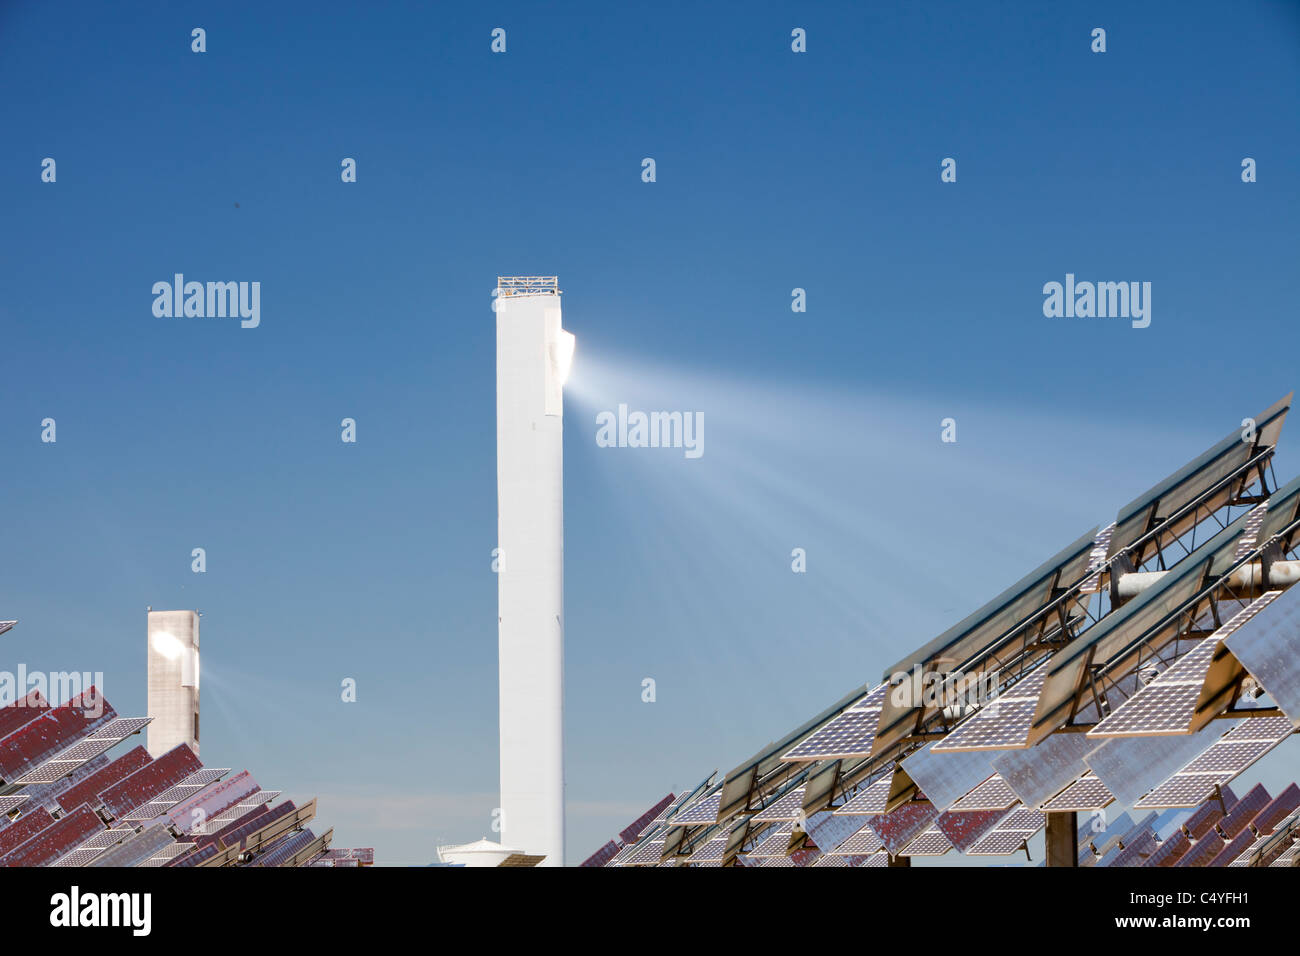 Die PS20 solar thermische Turm, der nur solche Arbeiten solar derzeit in der Welt. Stockfoto